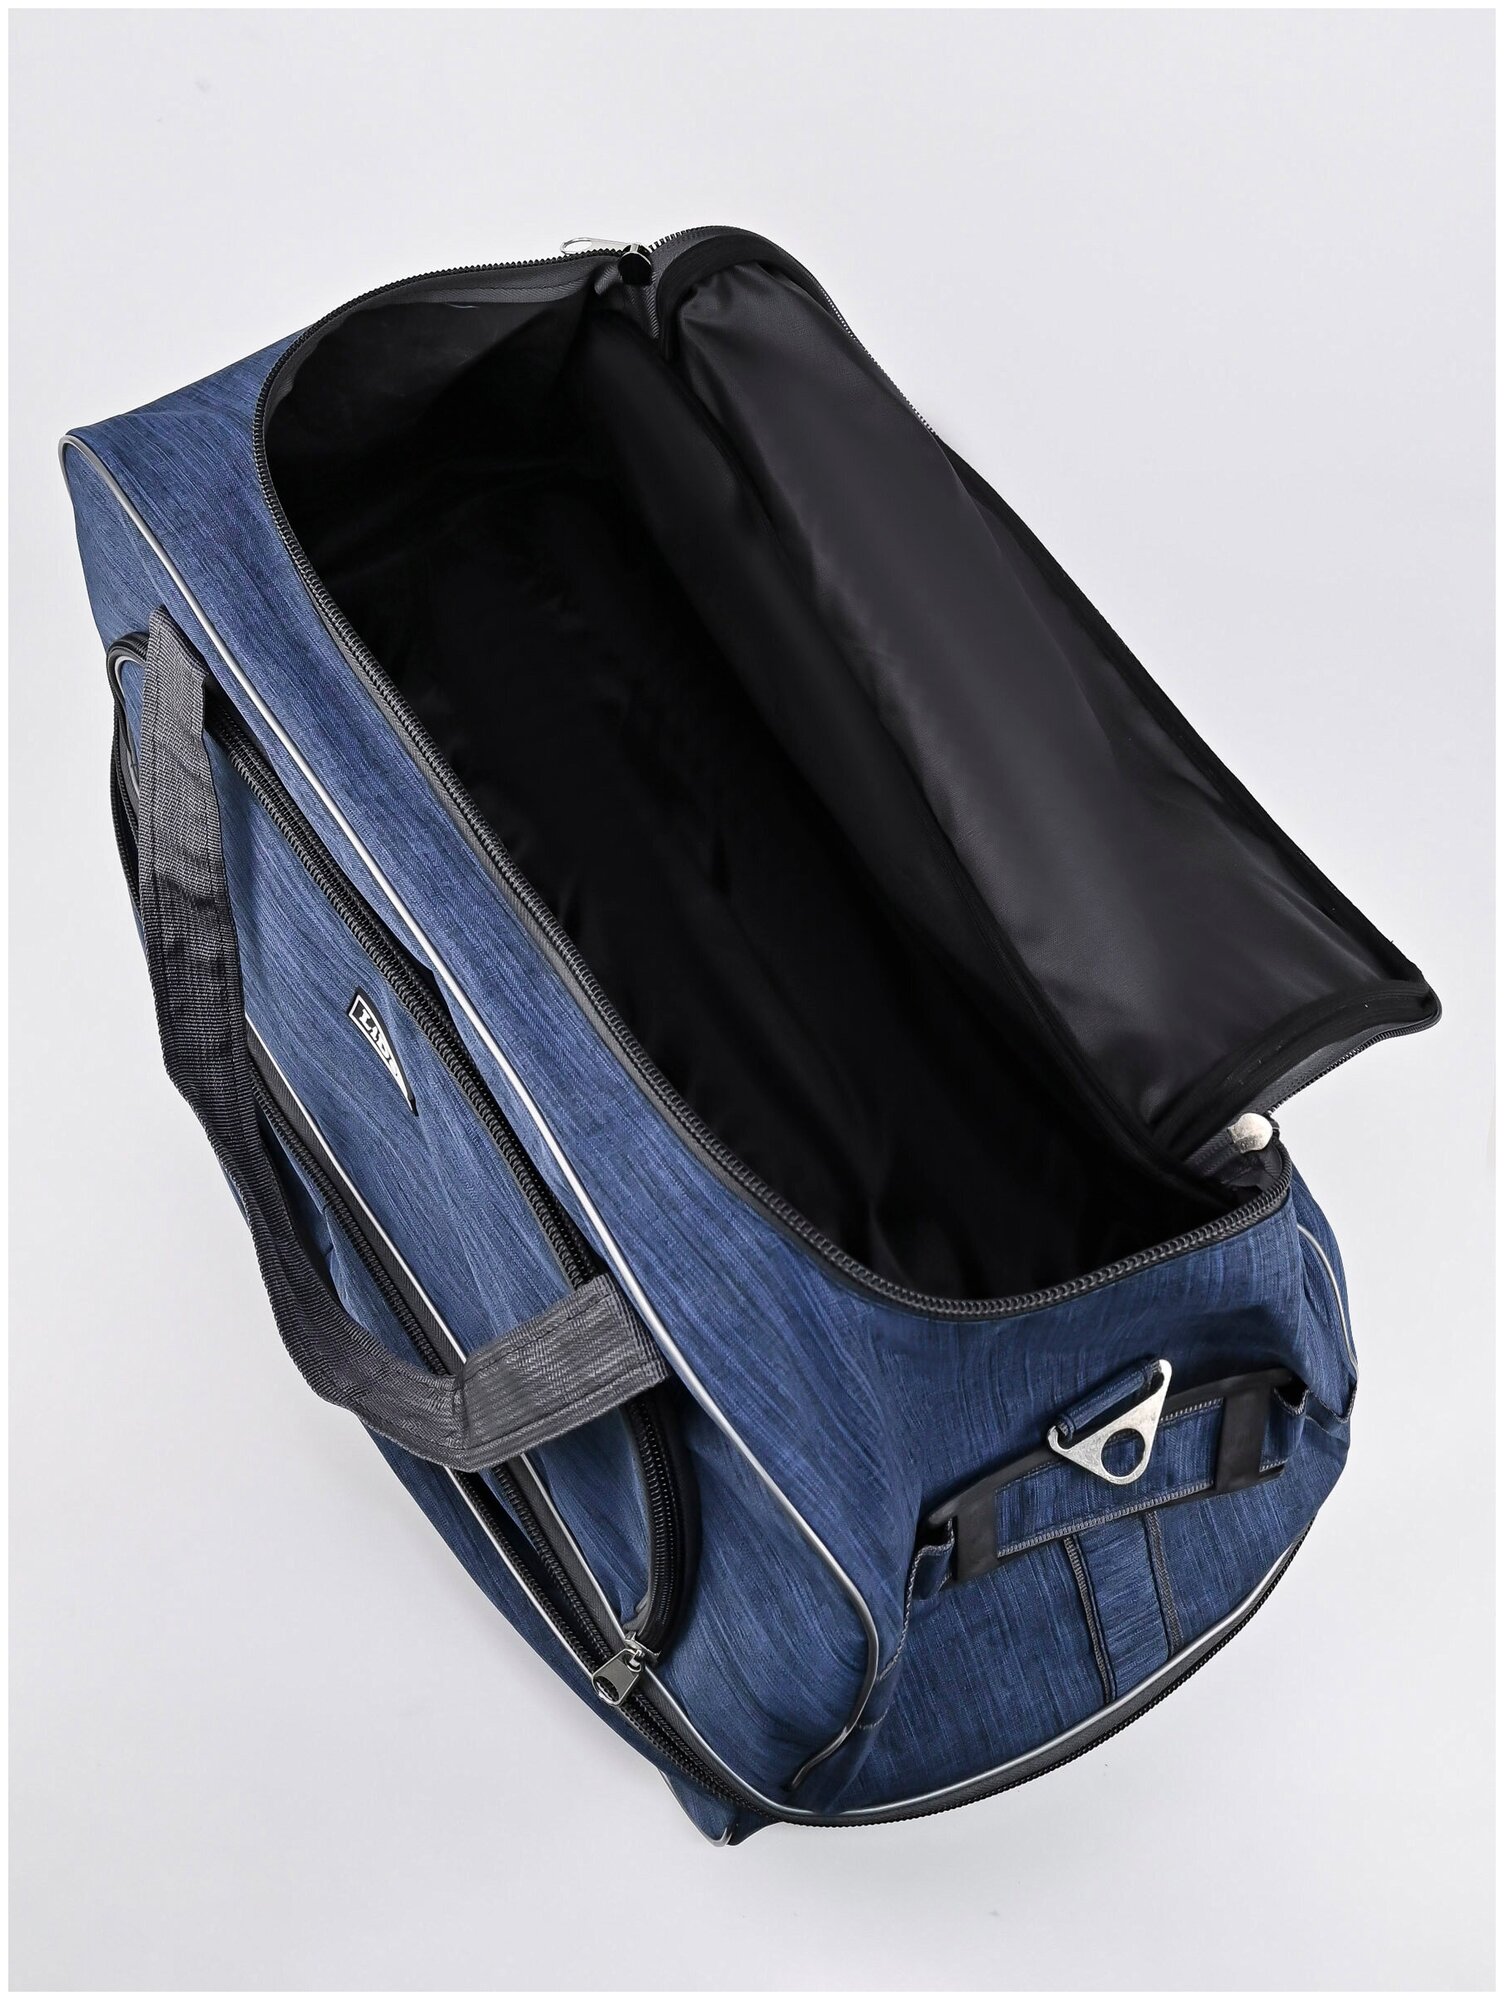 Дорожная сумка на колесах c раздвижкой, чемодан тележка для путешествий, мужская женская - фотография № 12